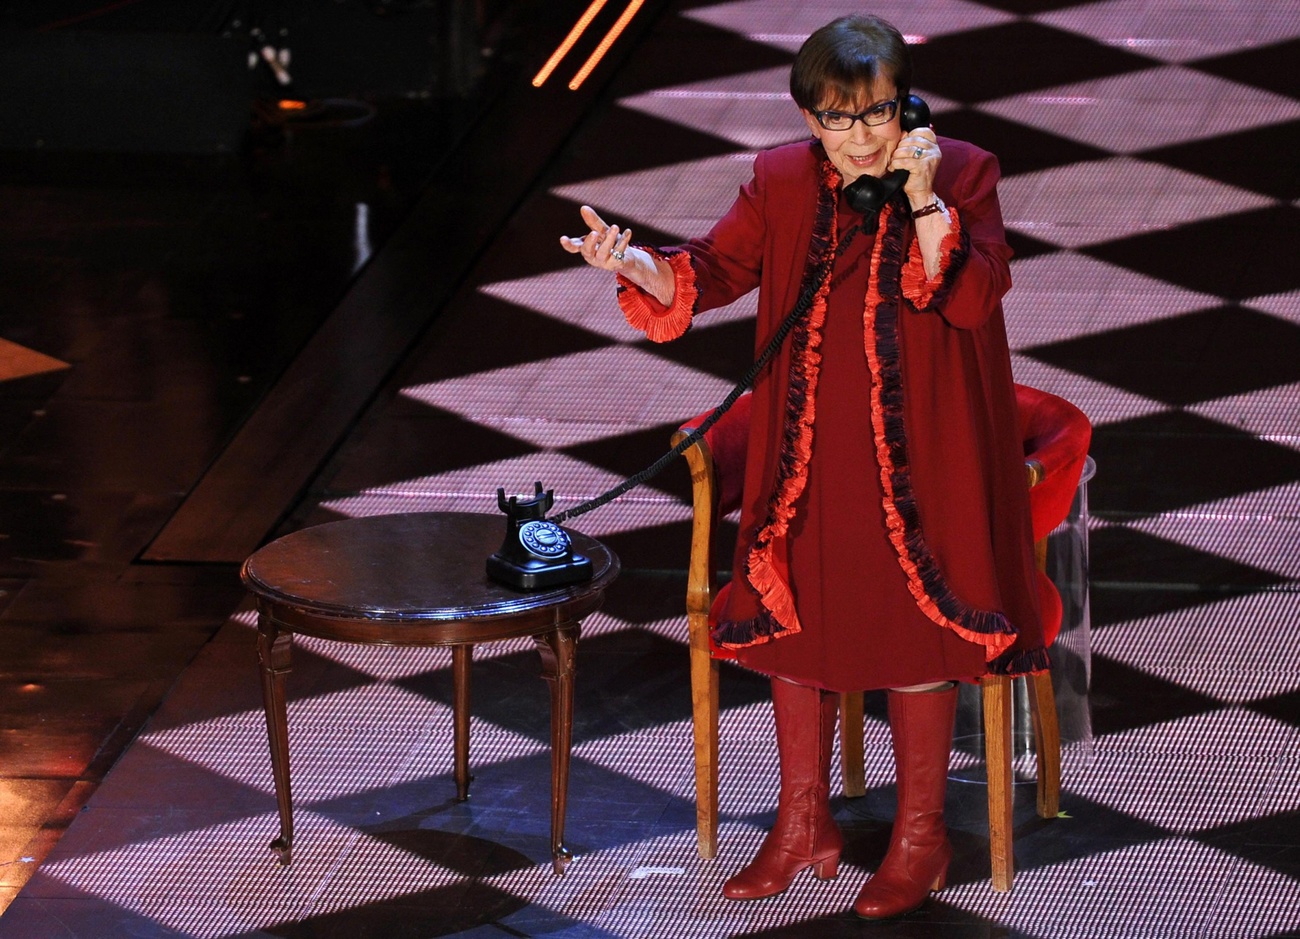 Dona anziana in abito rosso e stivali alti su palcoscenico illuminato a rombi, parla a un vecchio telefono seduta a un tavolino